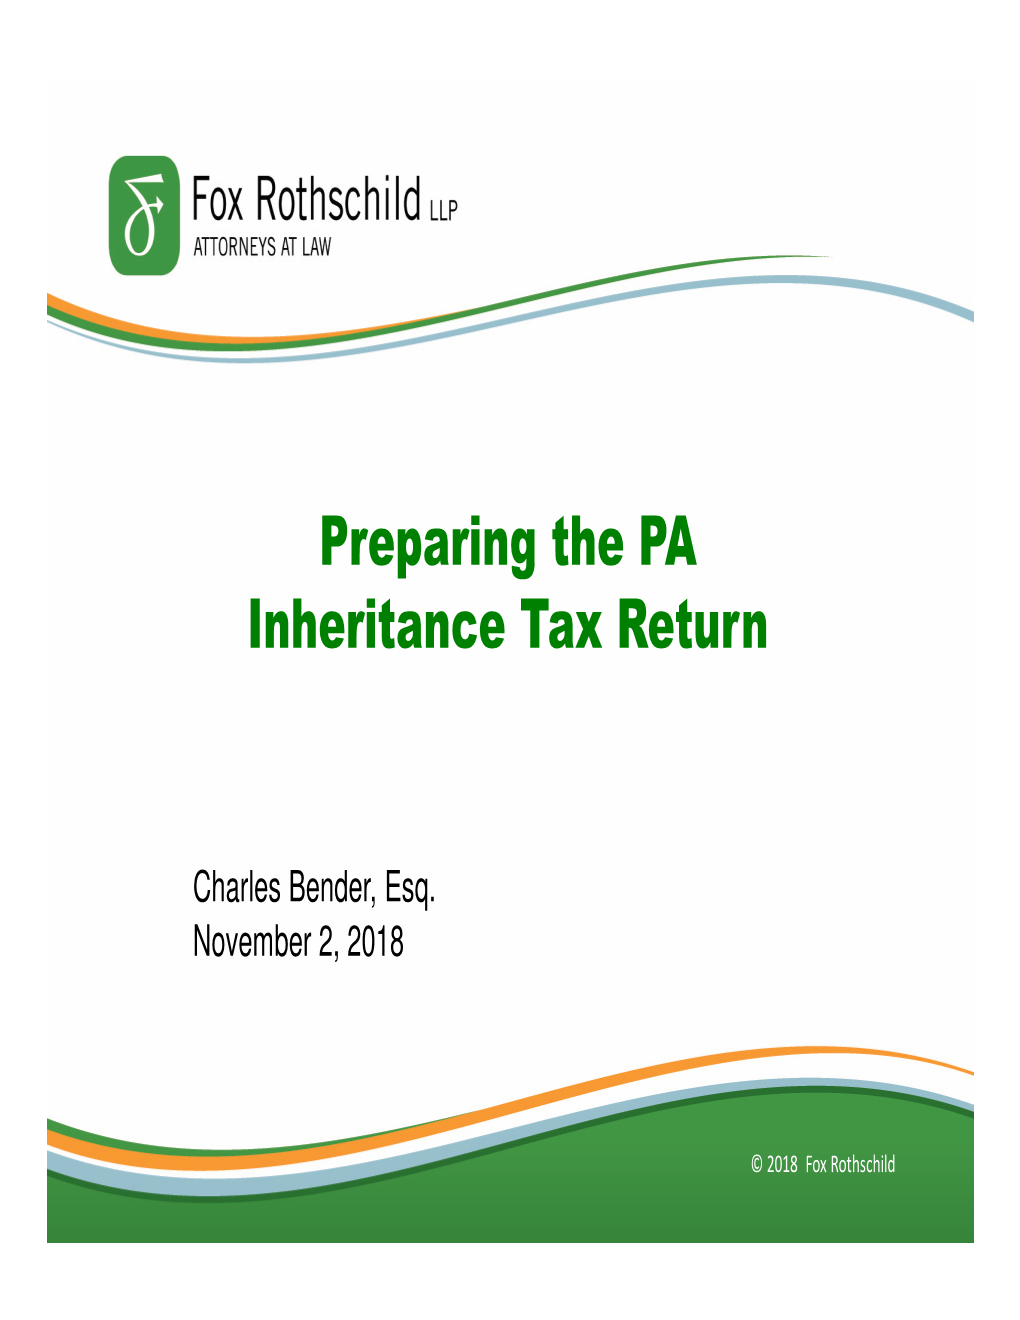 Preparing the PA Inheritance Tax Return